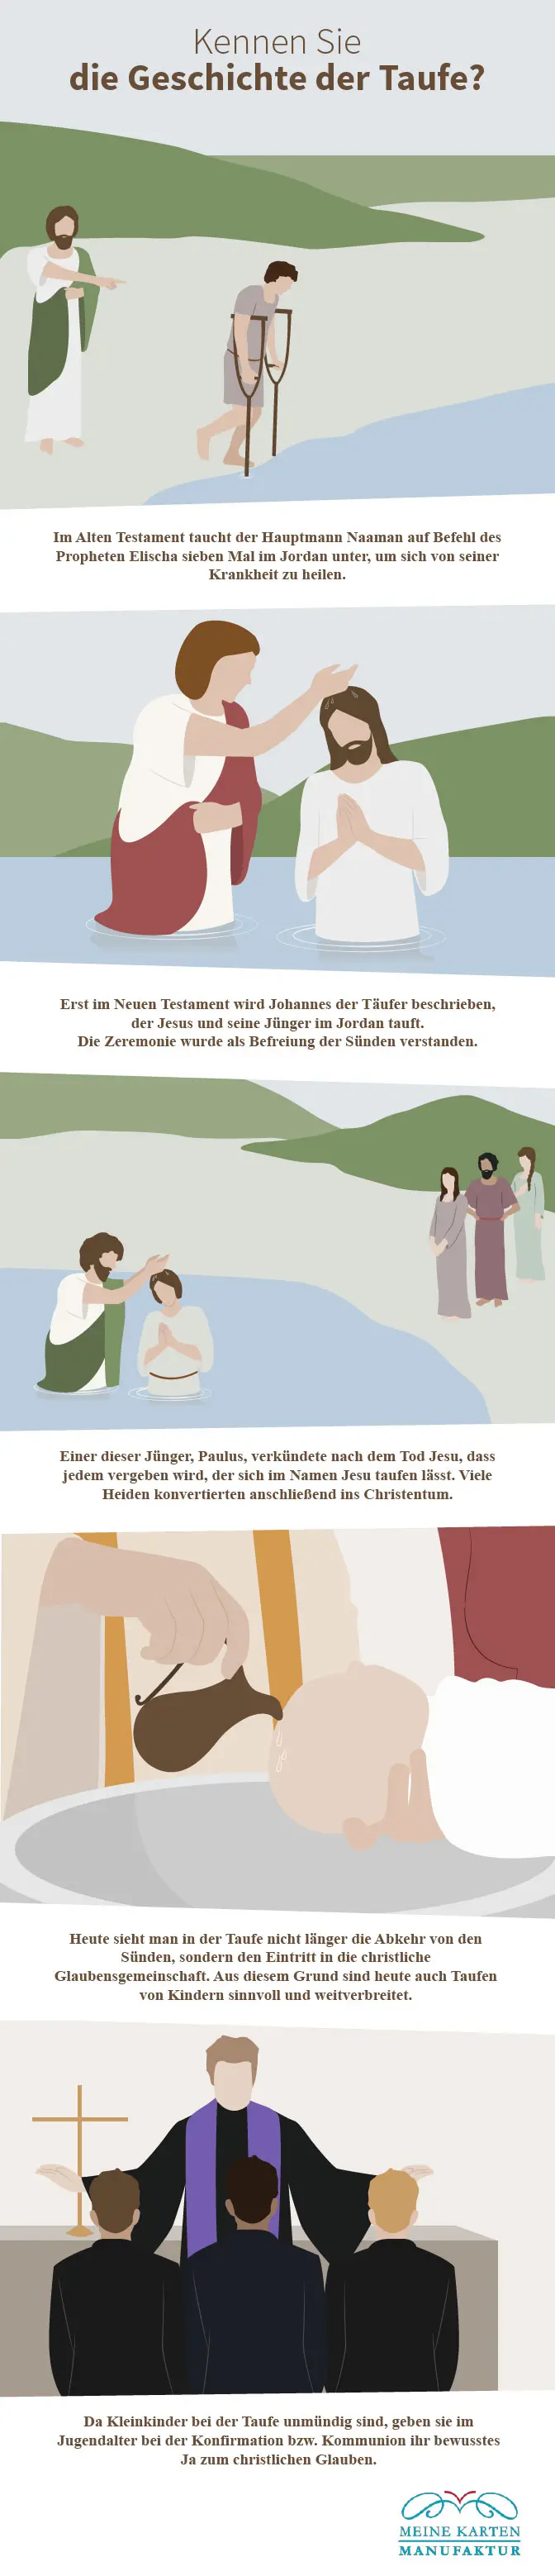 Geschichte der Taufe